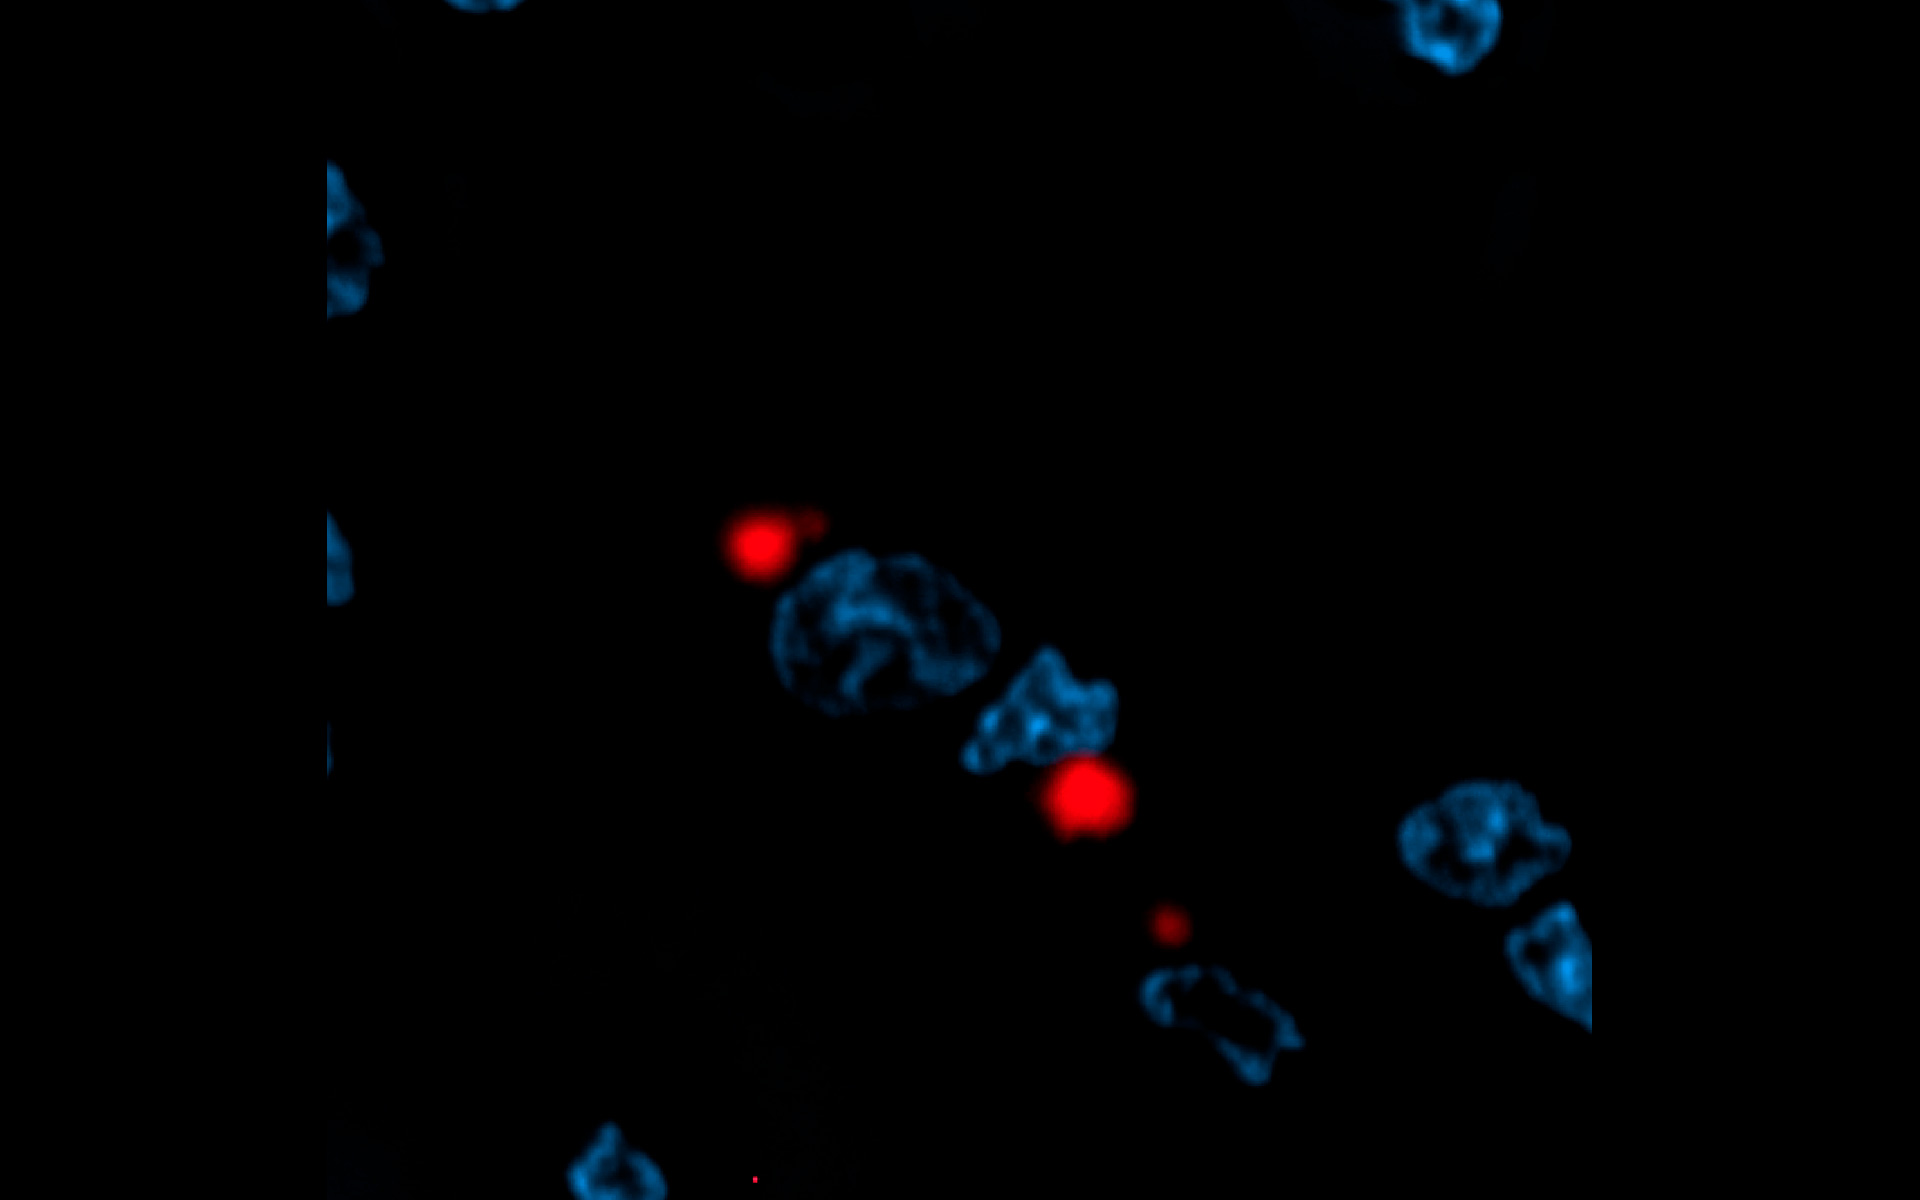 Makrophagen mit Proteinplaques, induziert durch Aggregation des mutierten Huntingtin-Proteins